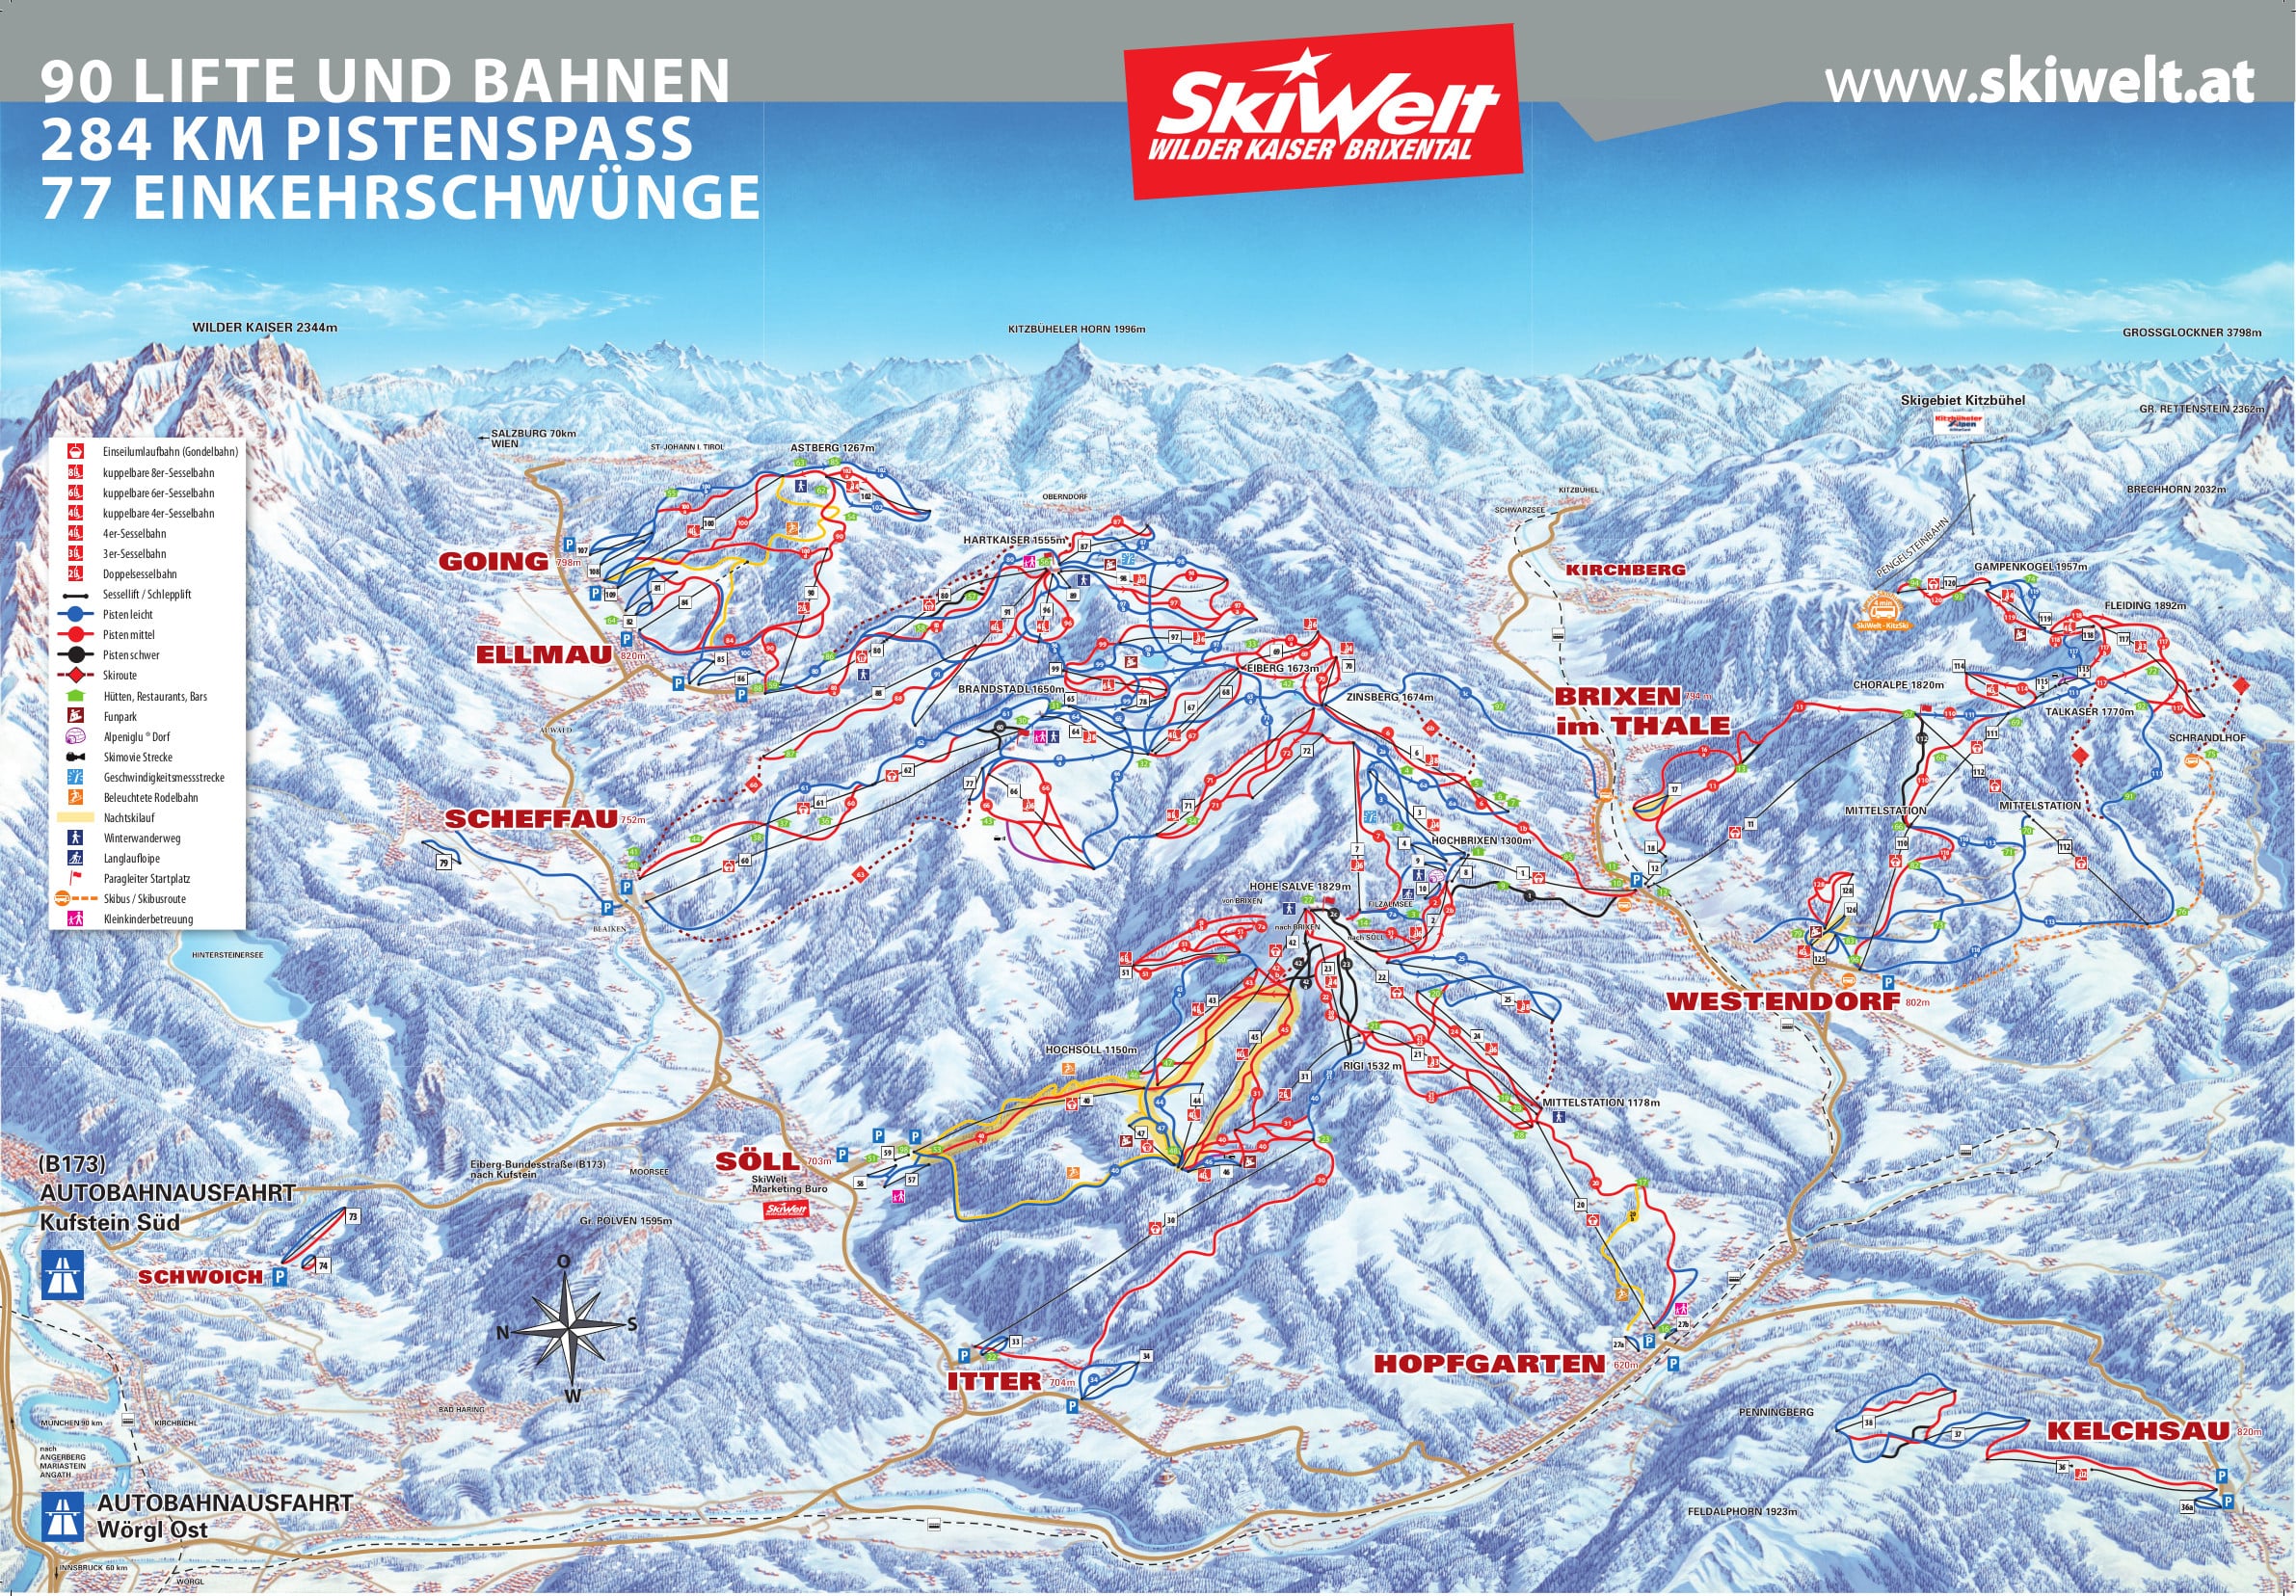 Maps Of Skiwelt Ski Resort Collection Of Maps Of Skiwelt Piste Maps